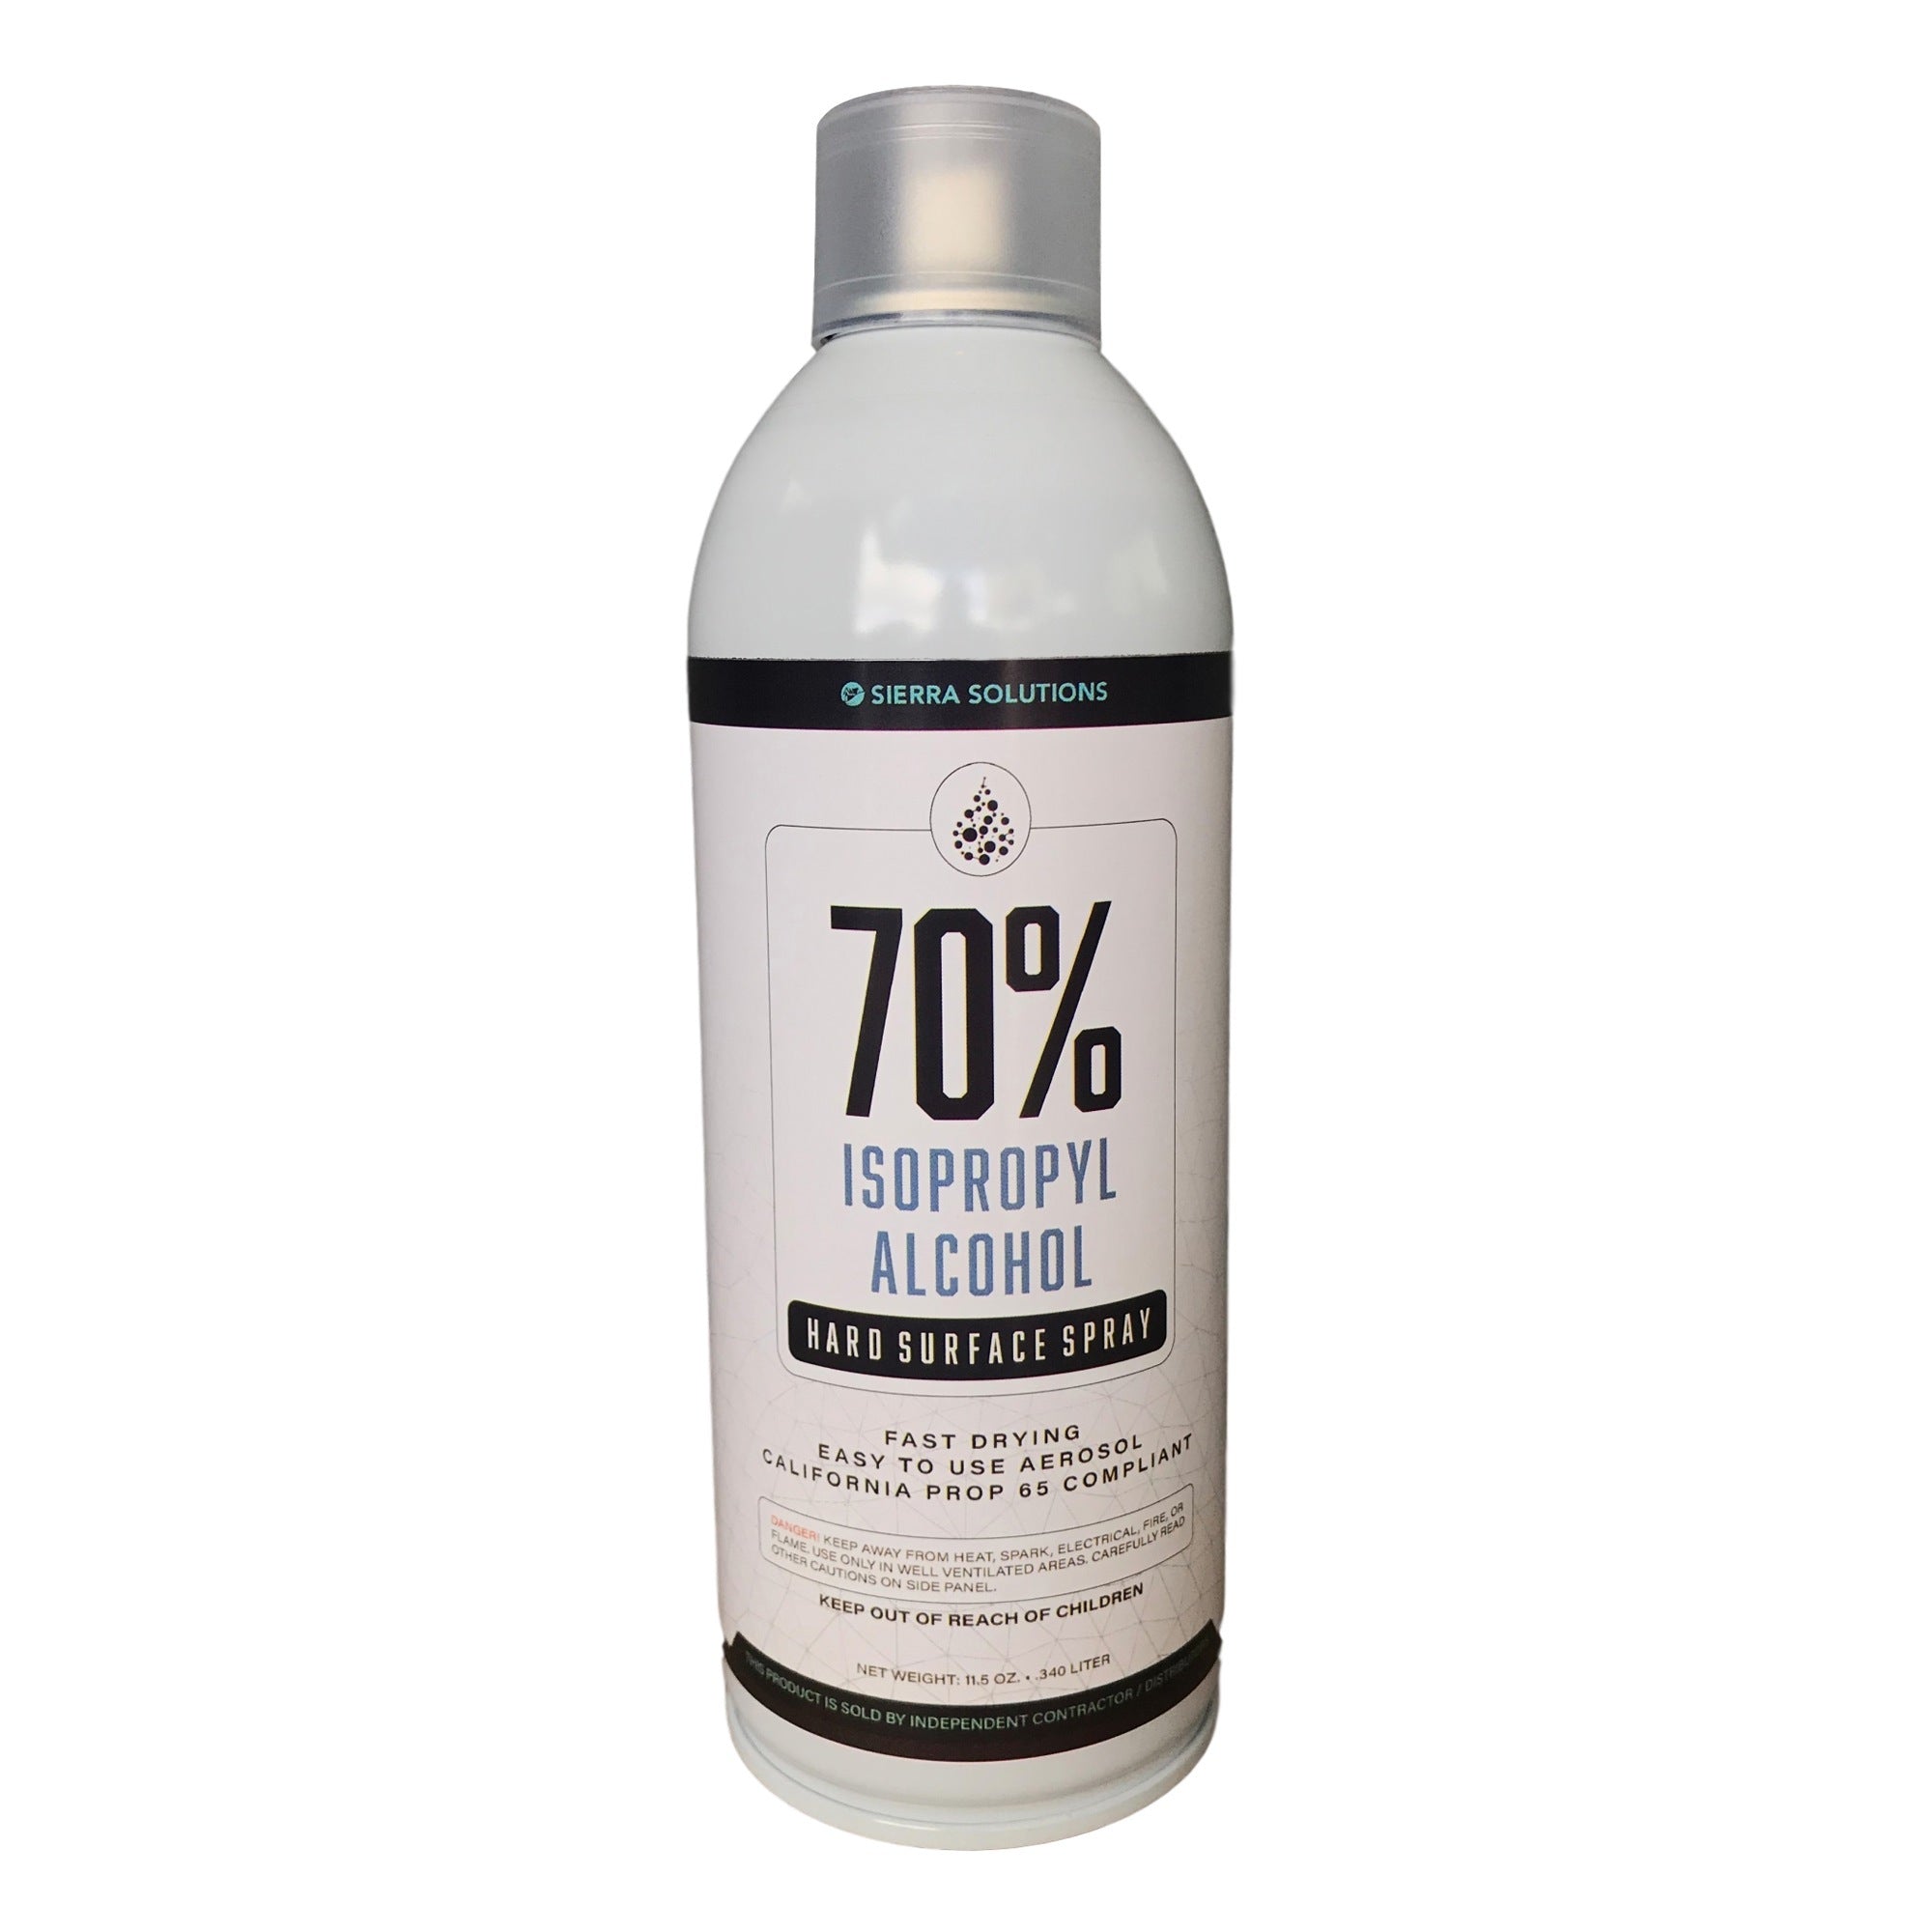 H-E-B 70% Isopropyl Alcohol Spray